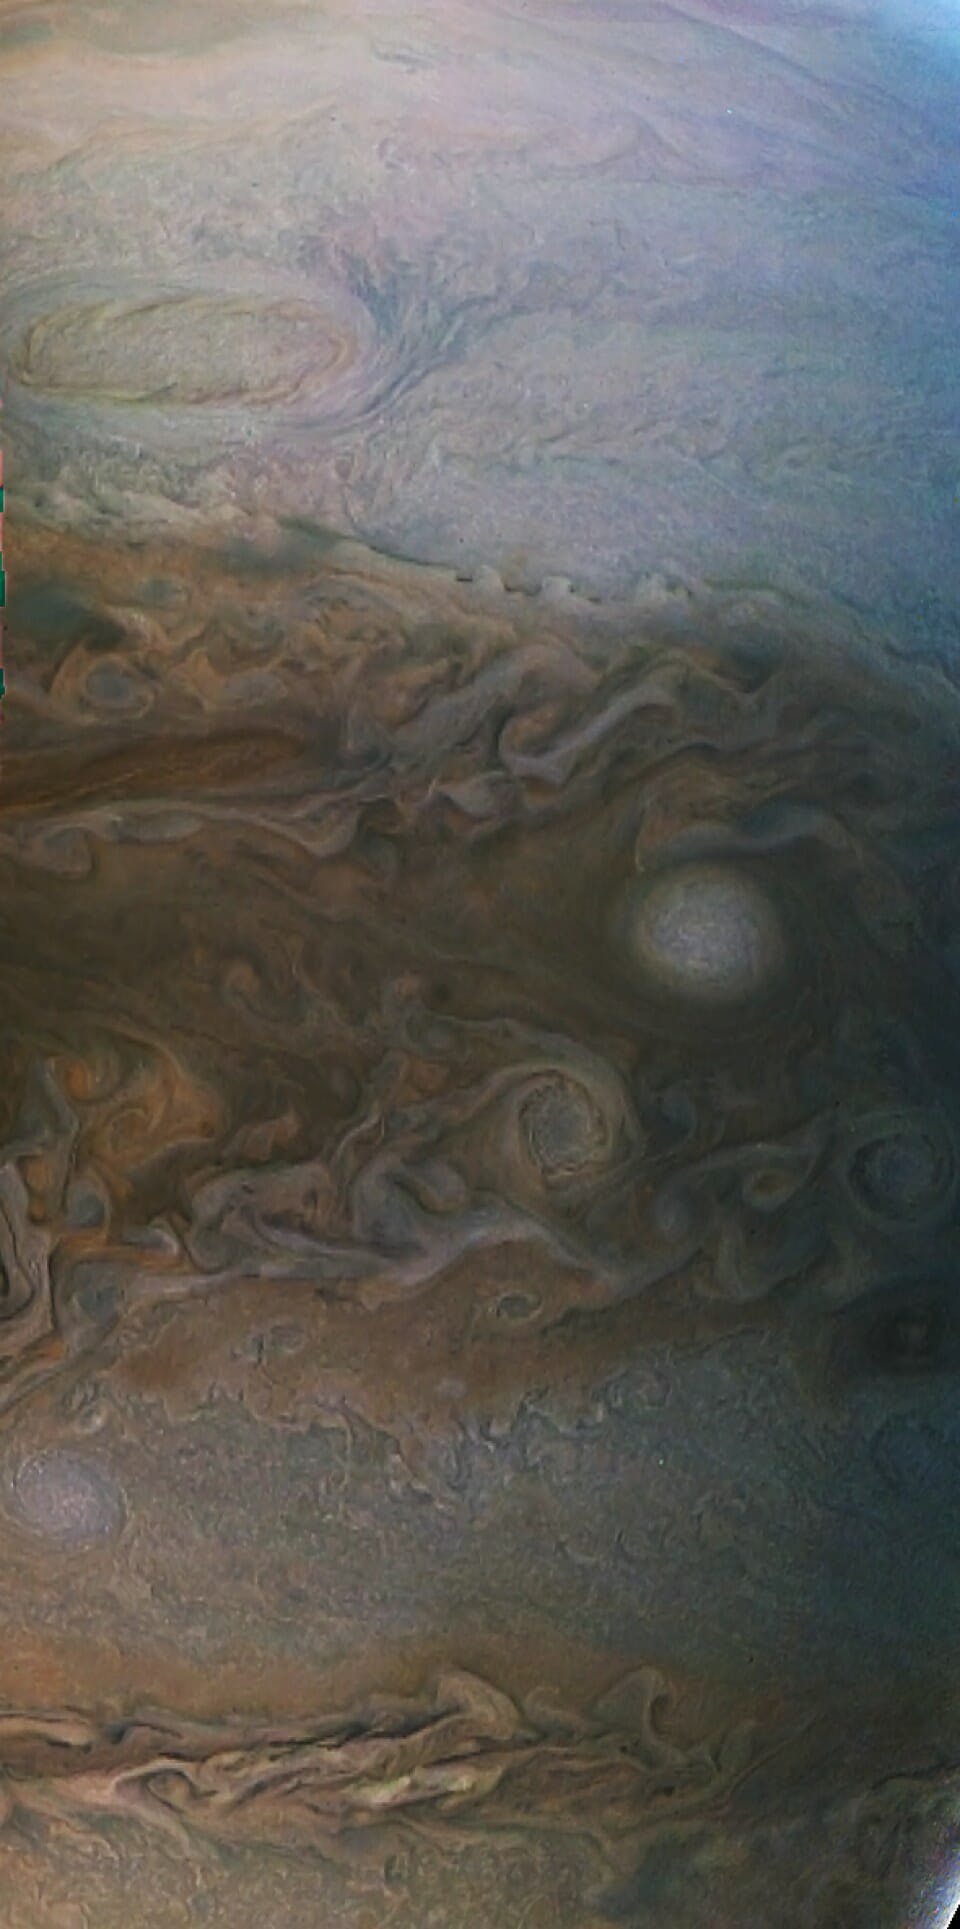 Juno Jupiter 5